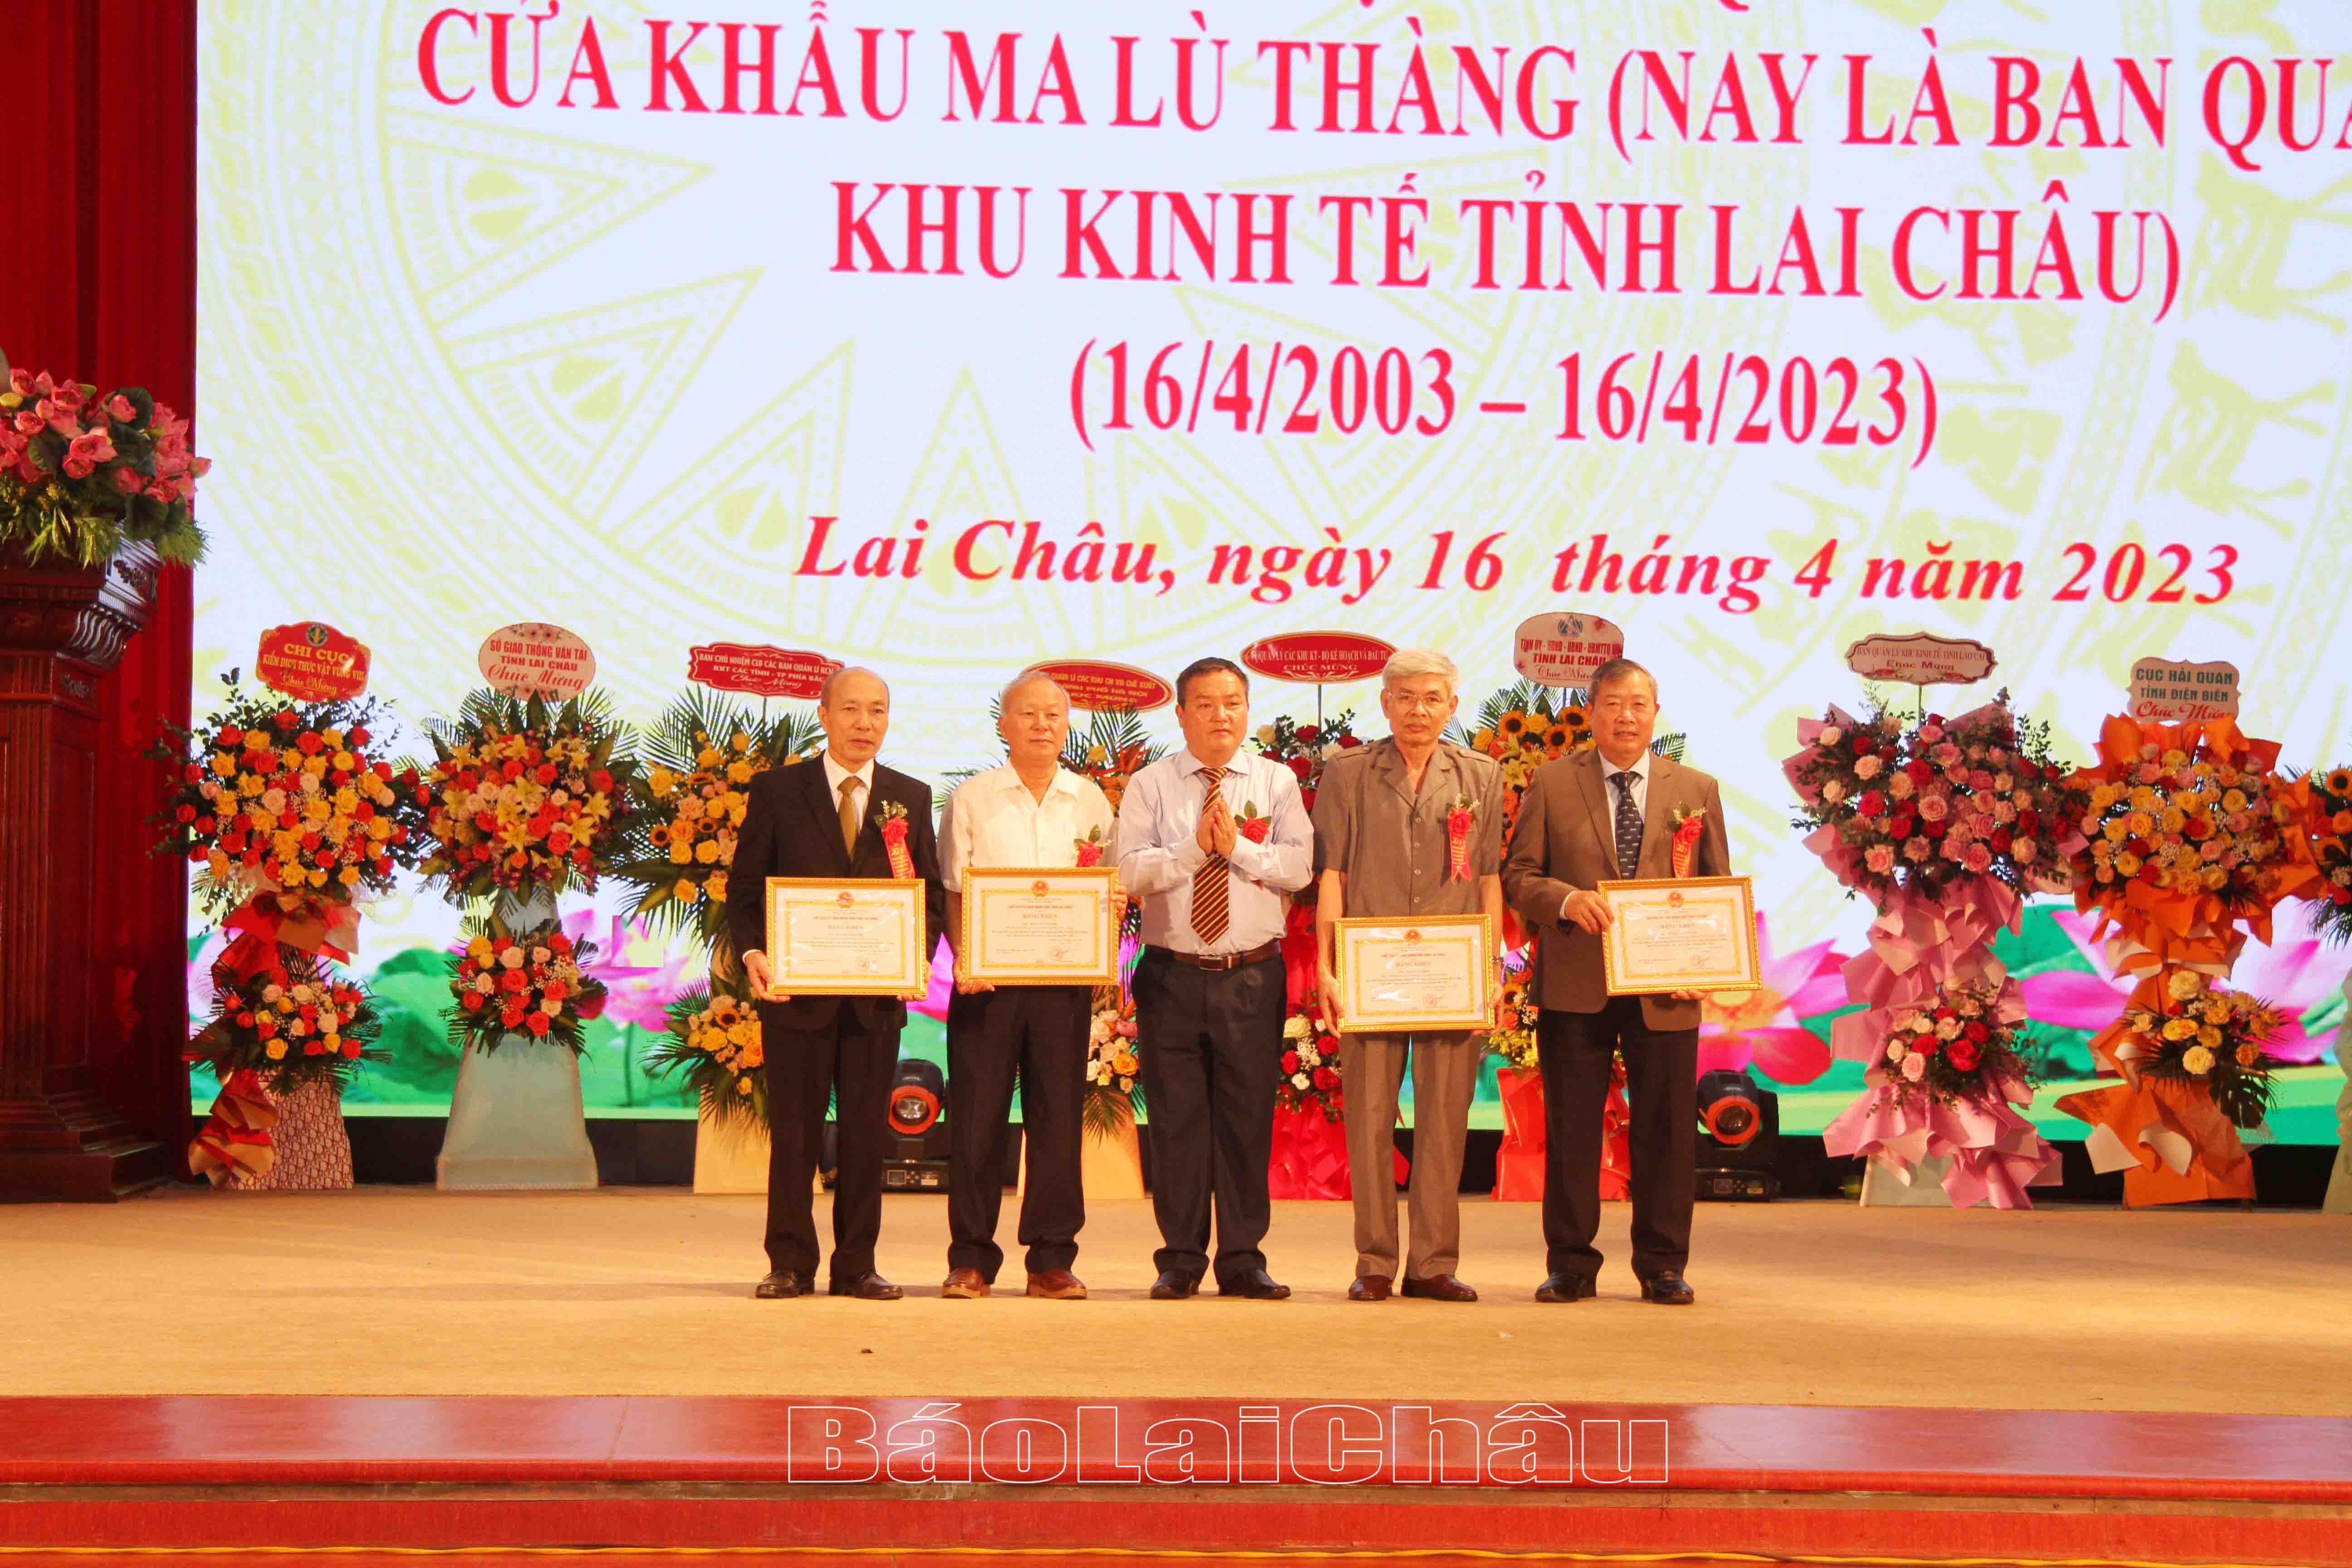 Đồng chí Giàng A Tính - Ủy viên Ban Thường vụ Tỉnh ủy, Phó Chủ tịch UBND tỉnh trao Bằng khen cho các cá nhân có nhiều đóng góp trong xây dựng và phát triển Ban giai đoạn 2003 - 2023.